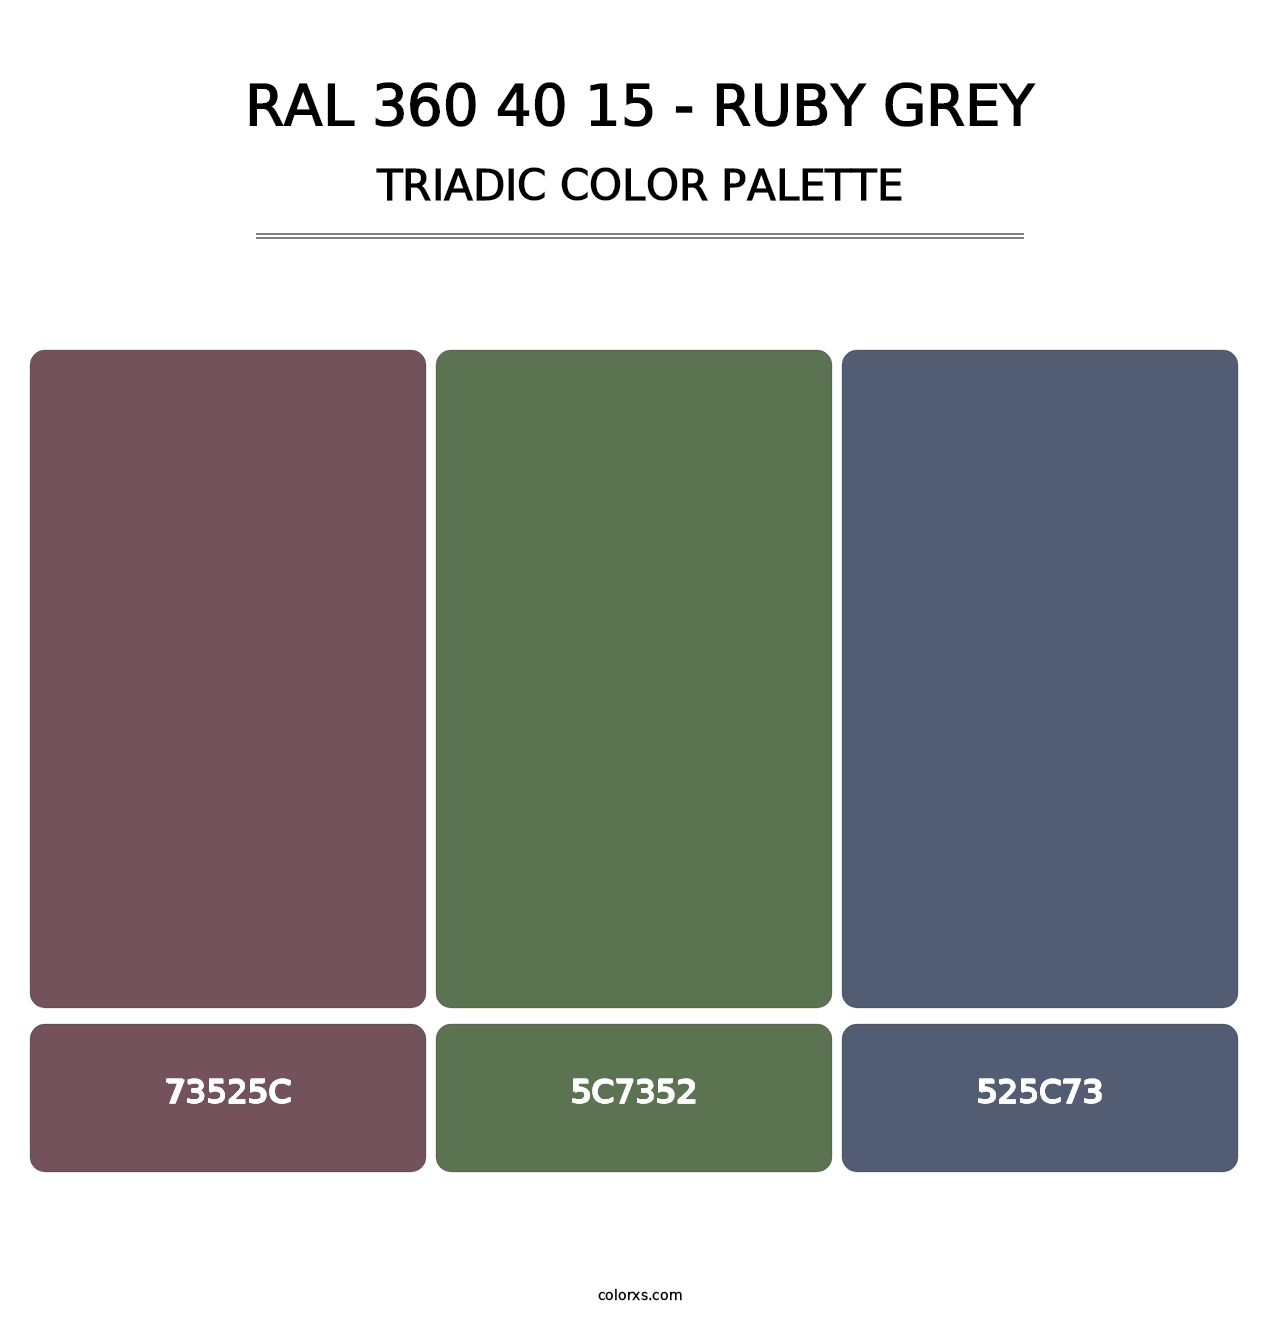 RAL 360 40 15 - Ruby Grey - Triadic Color Palette